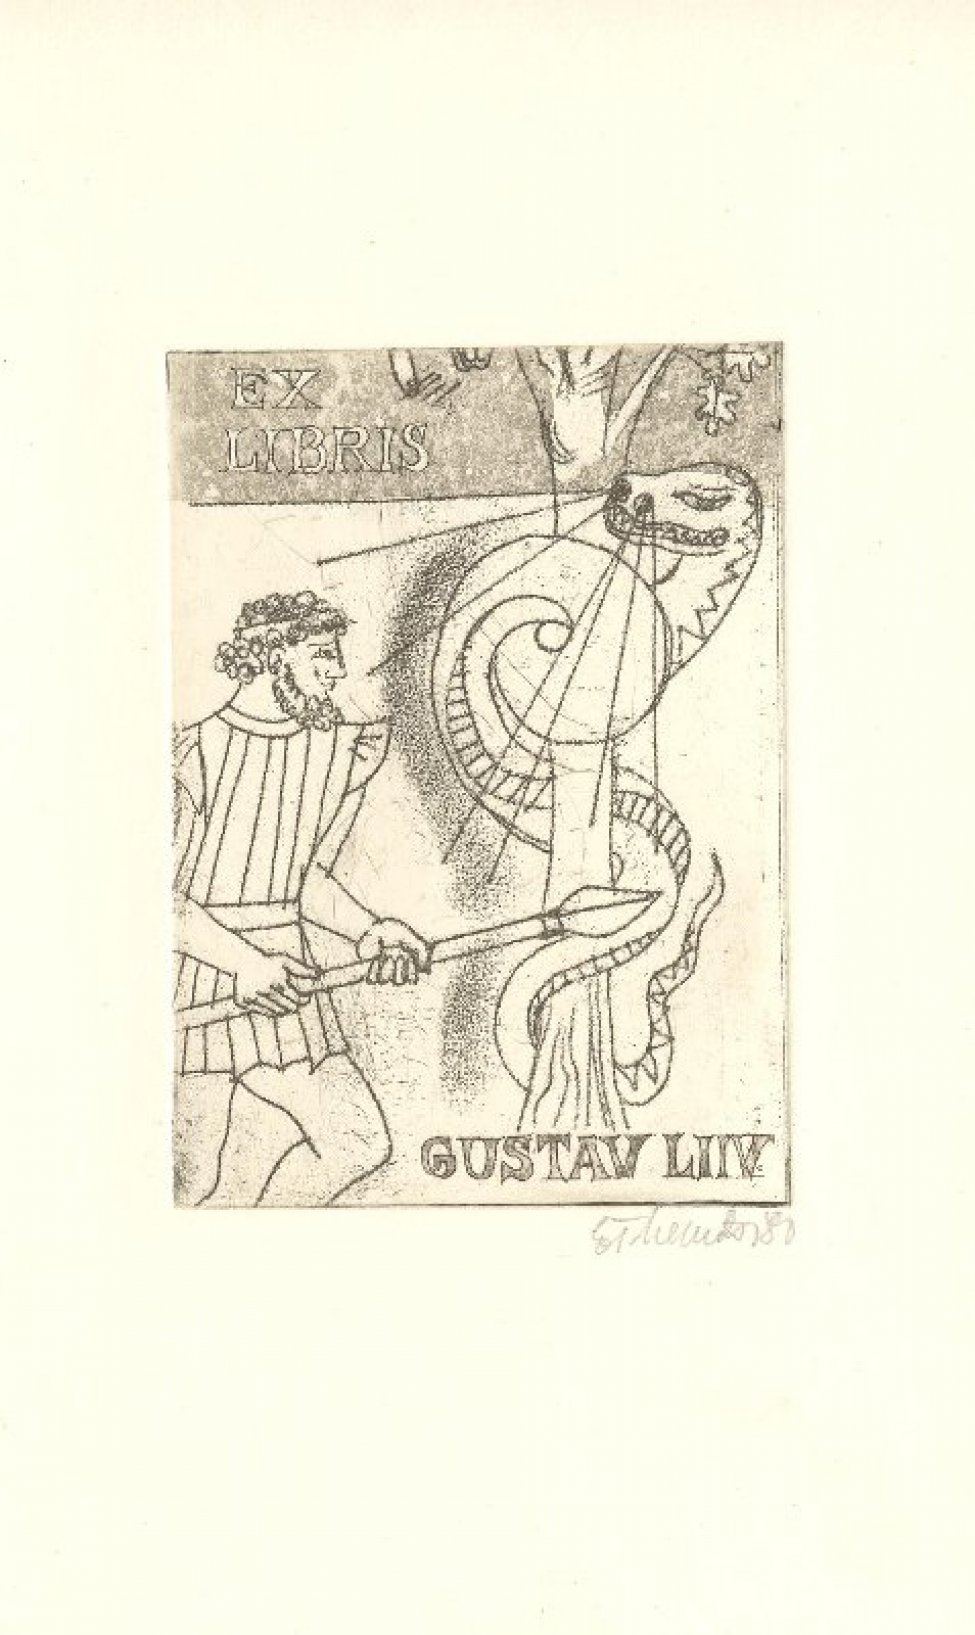 Изображен воин в античной одежде, пронзающий копьем змея, обвившегося вокруг дерева.